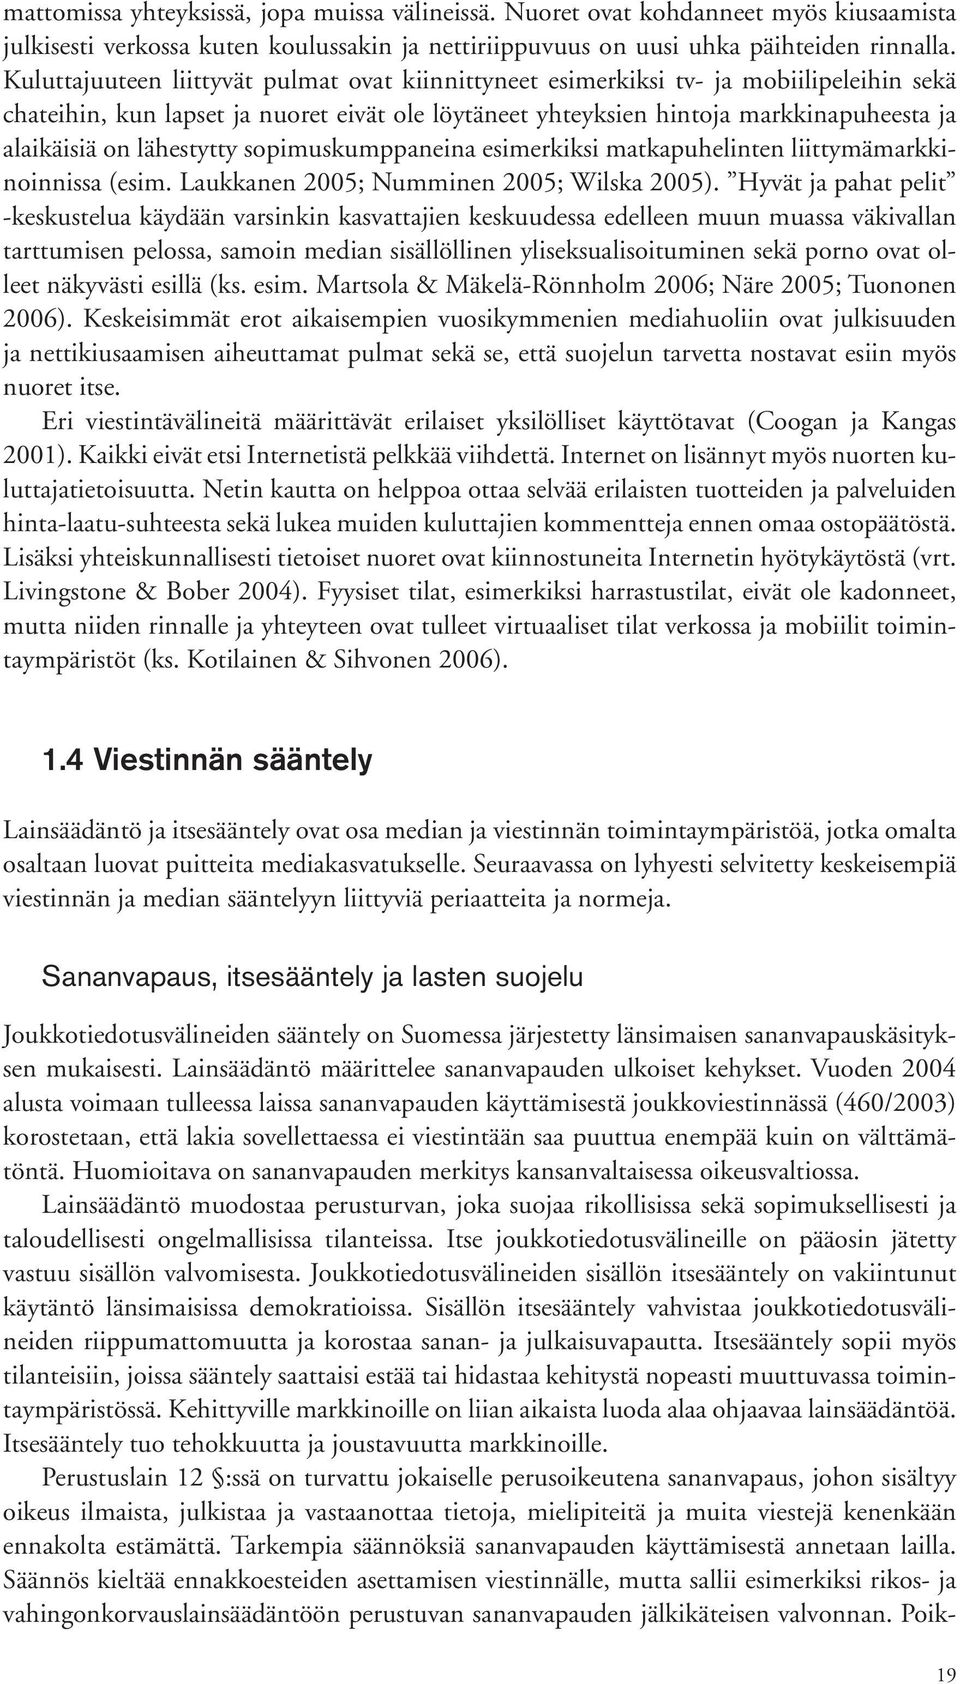 lähestytty sopimuskumppaneina esimerkiksi matkapuhelinten liittymämarkkinoinnissa (esim. Laukkanen 2005; Numminen 2005; Wilska 2005).